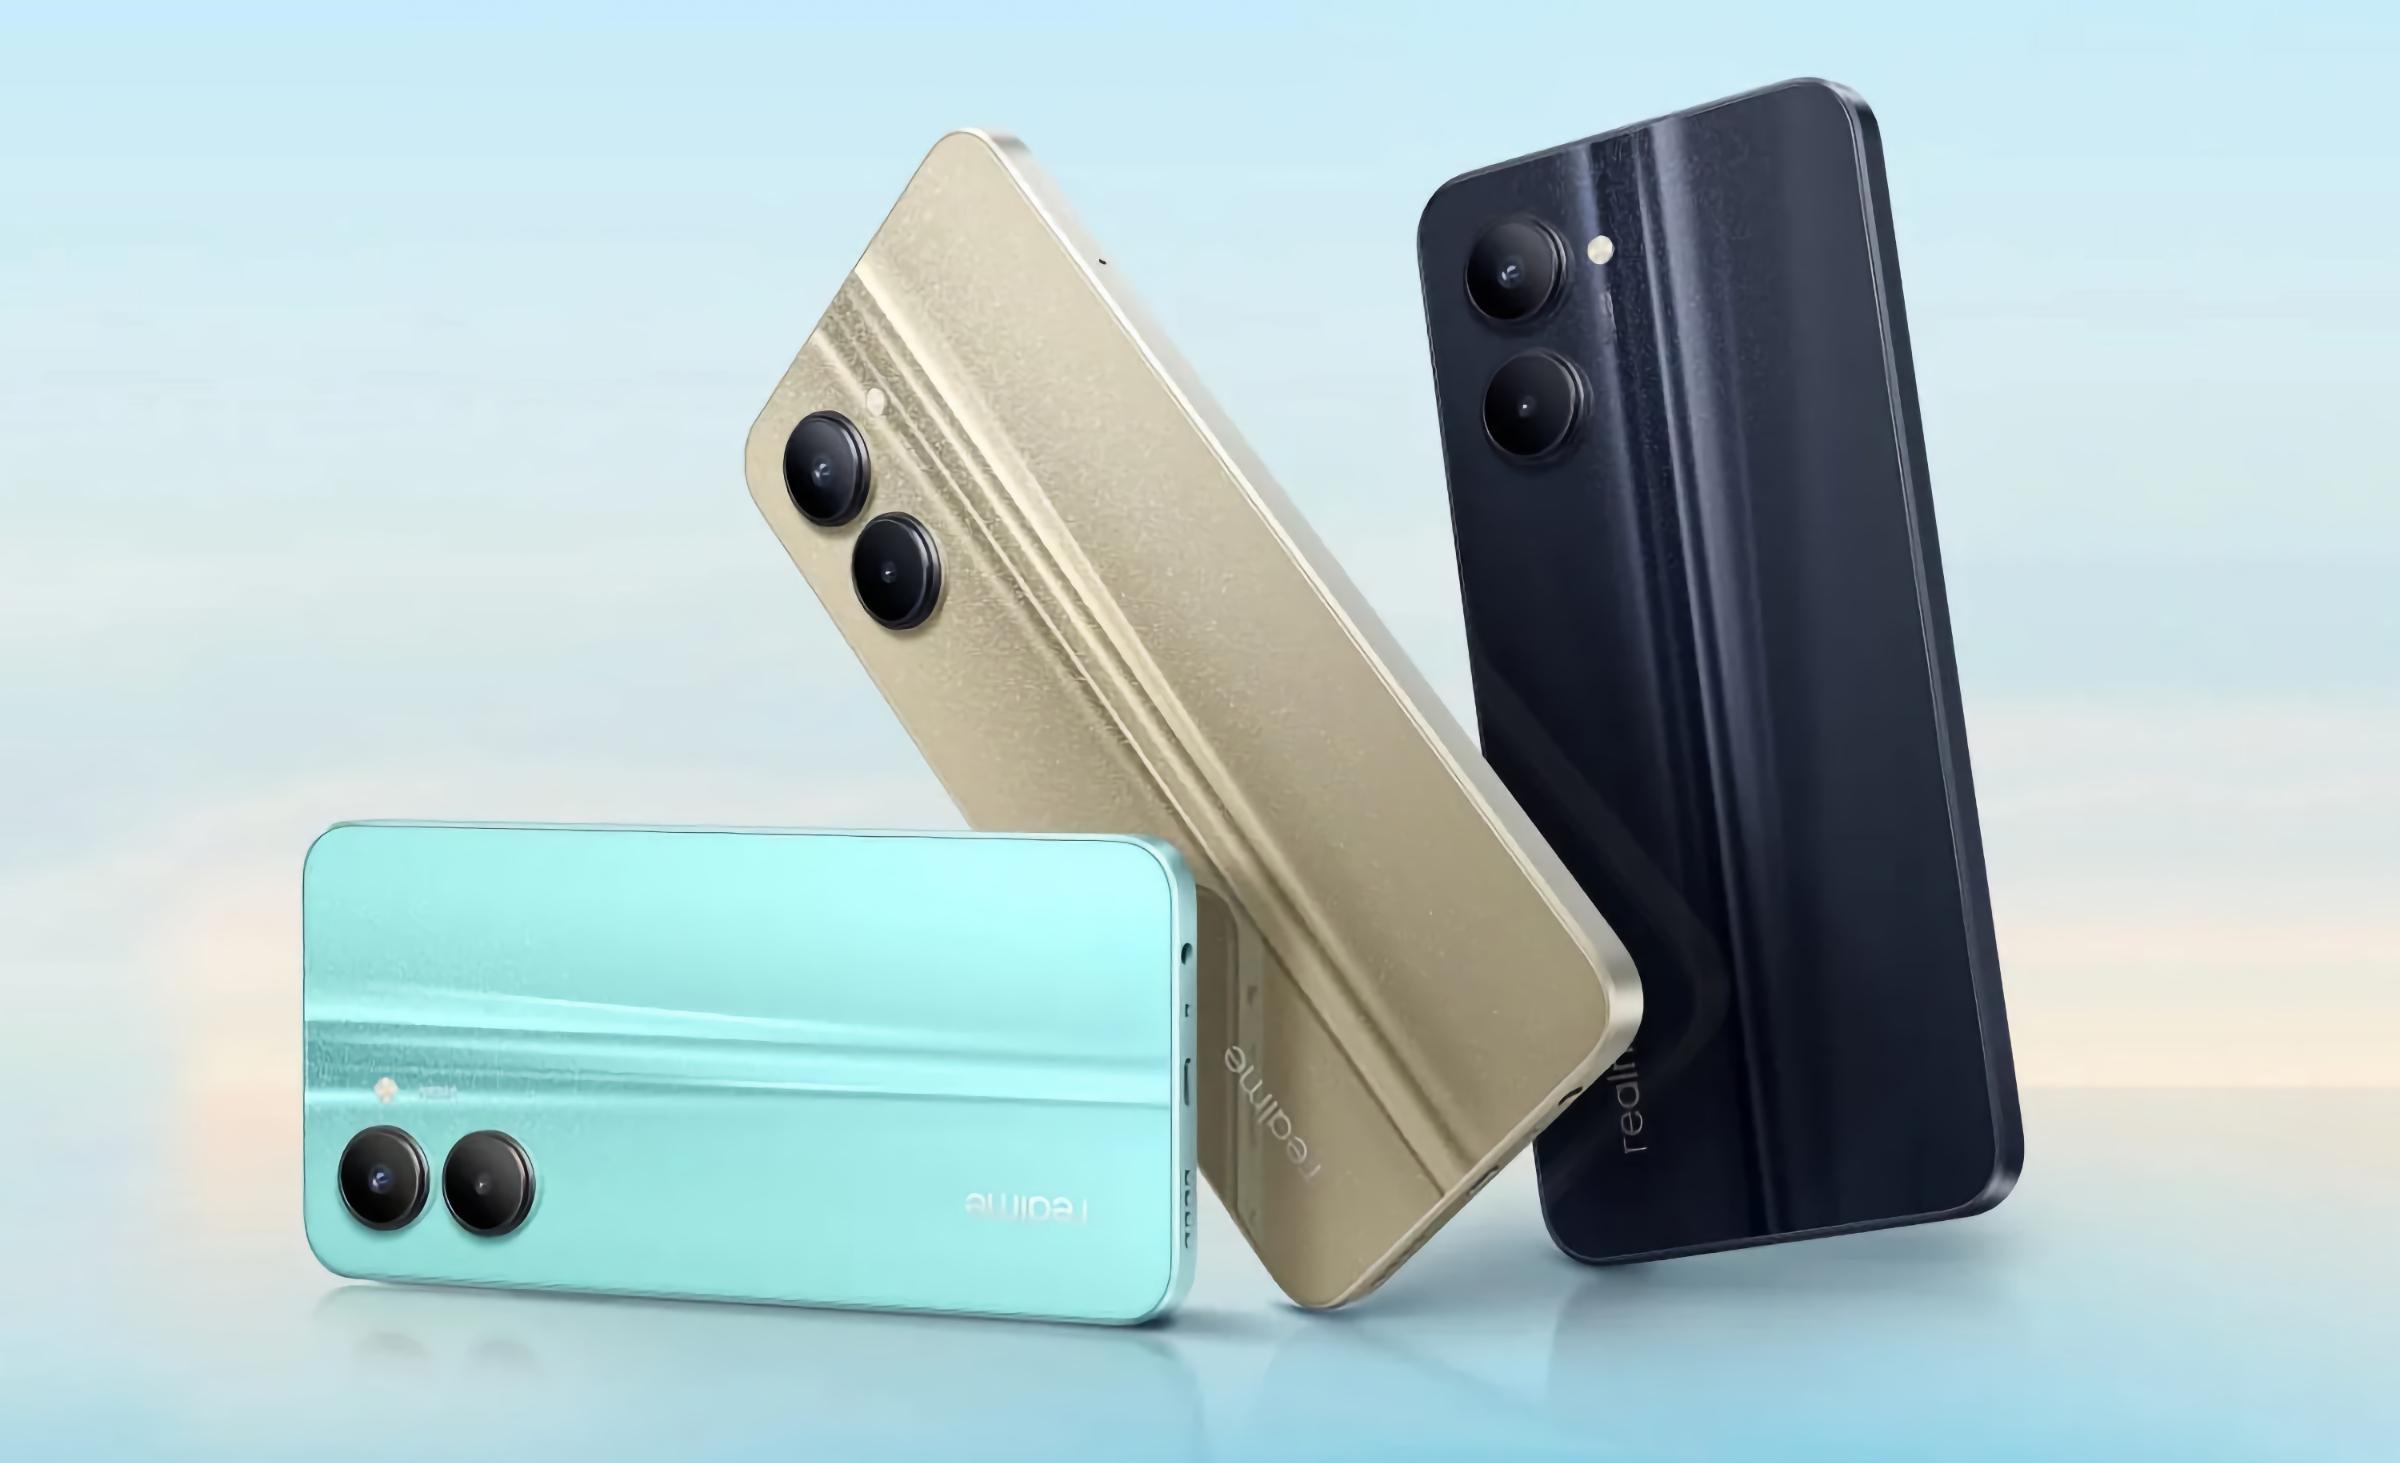 Realme bereitet sich auf die Veröffentlichung eines neuen Budget-Smartphones mit einem Chip MediaTek Helio G99 und einer Batterie von 5000 mAh